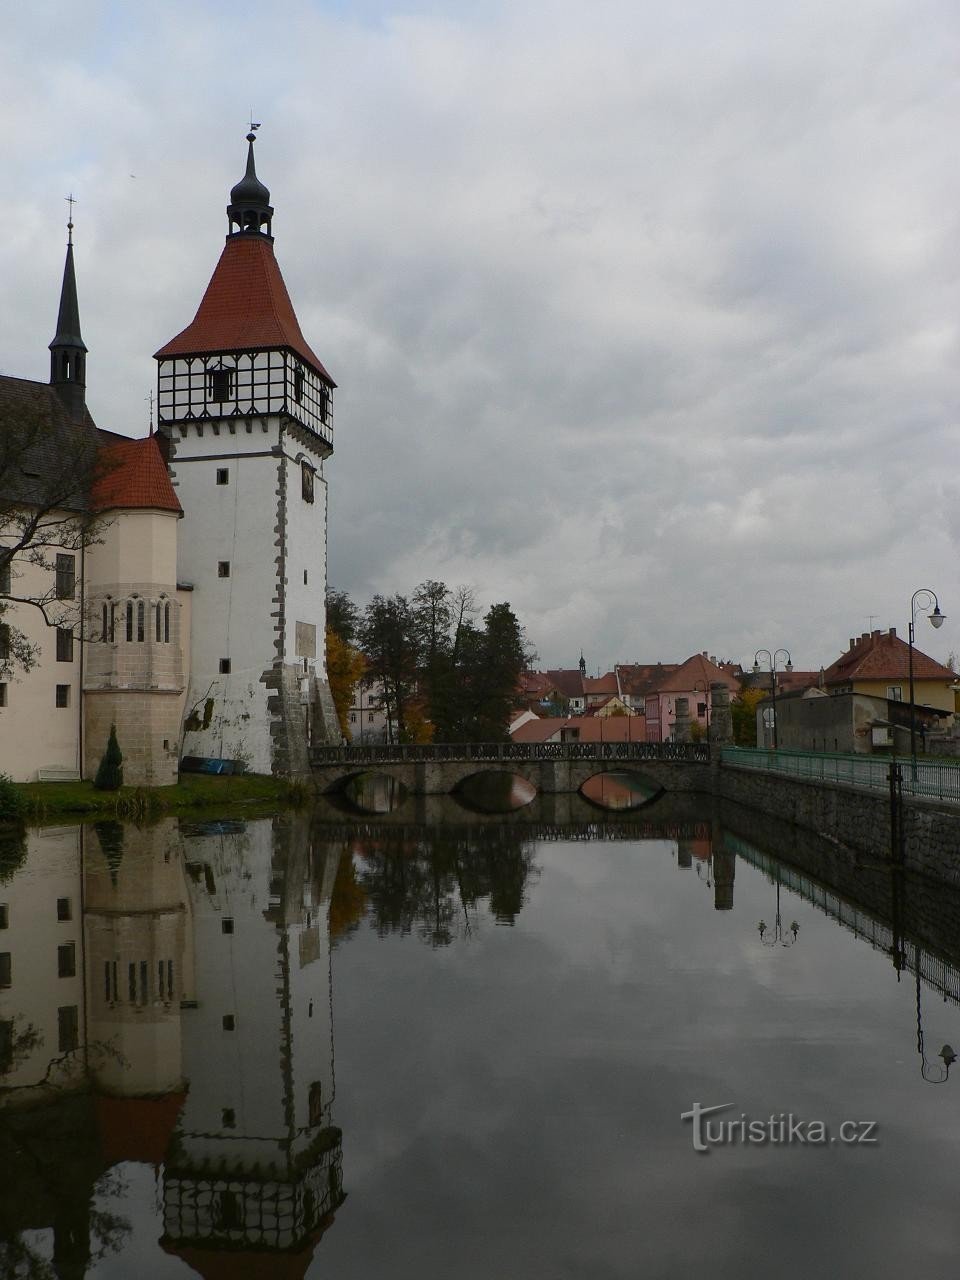 Blatná, turn de intrare cu capelă și pod